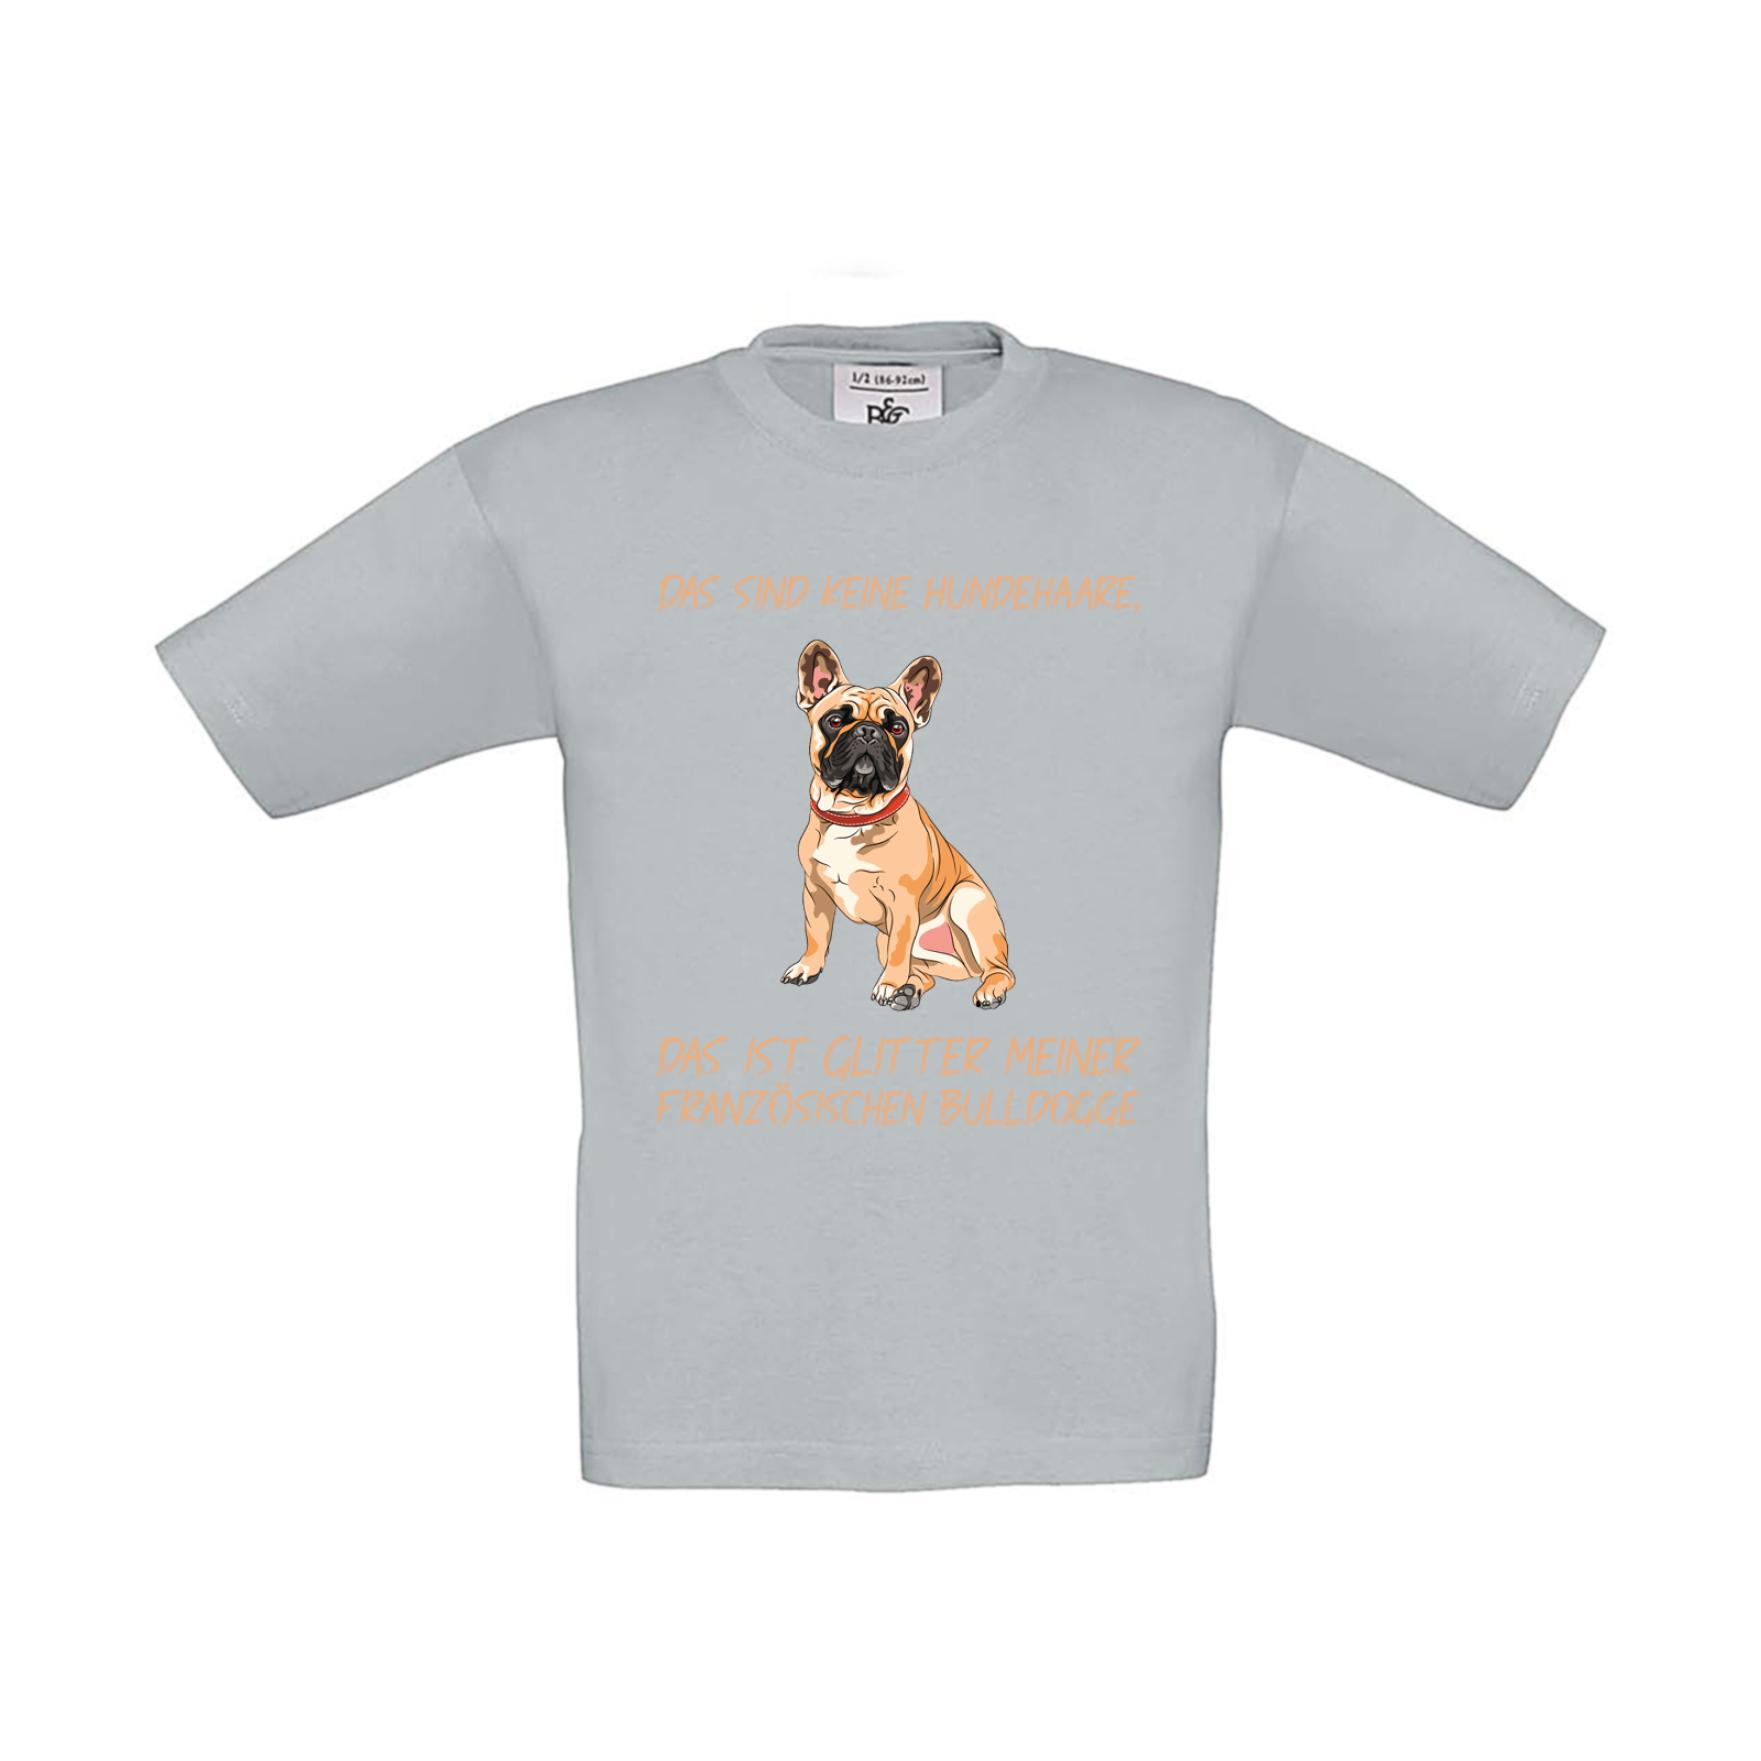 T-Shirt Kinder Hunde - Französische Bulldogge - keine Hundehaare - Glitter